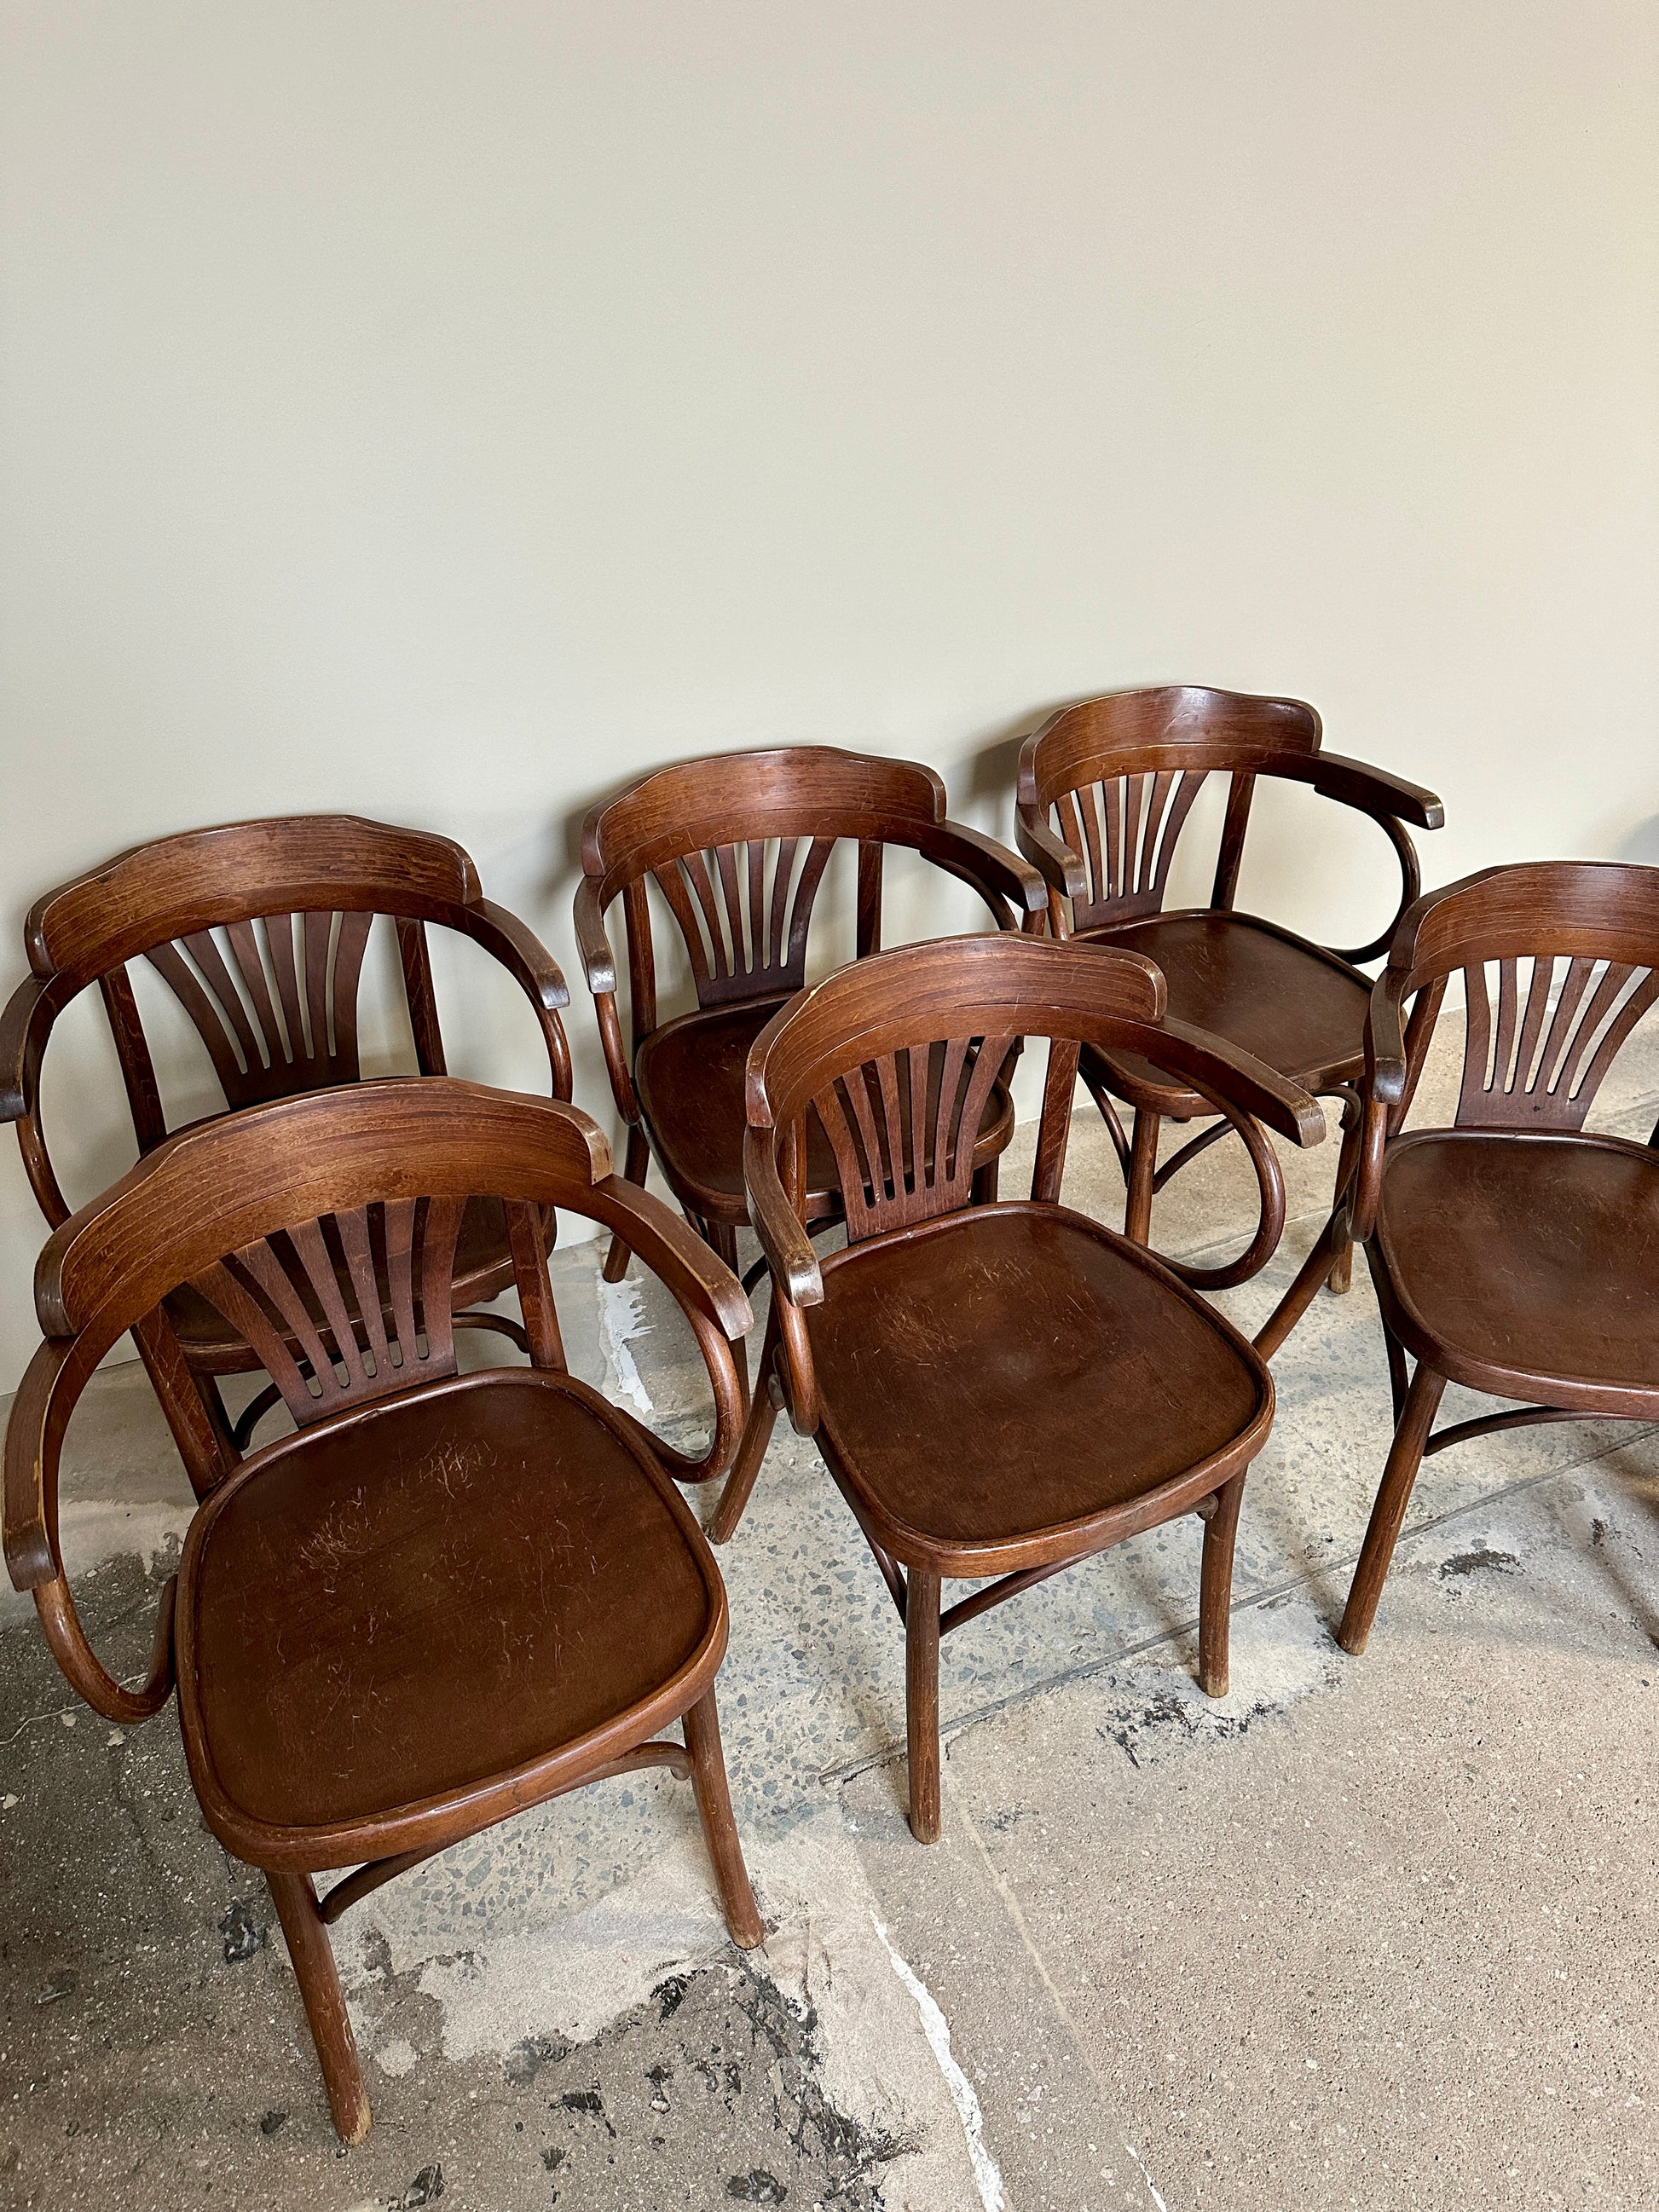 Bild visar äldre stolar i thonet modell i träfärg